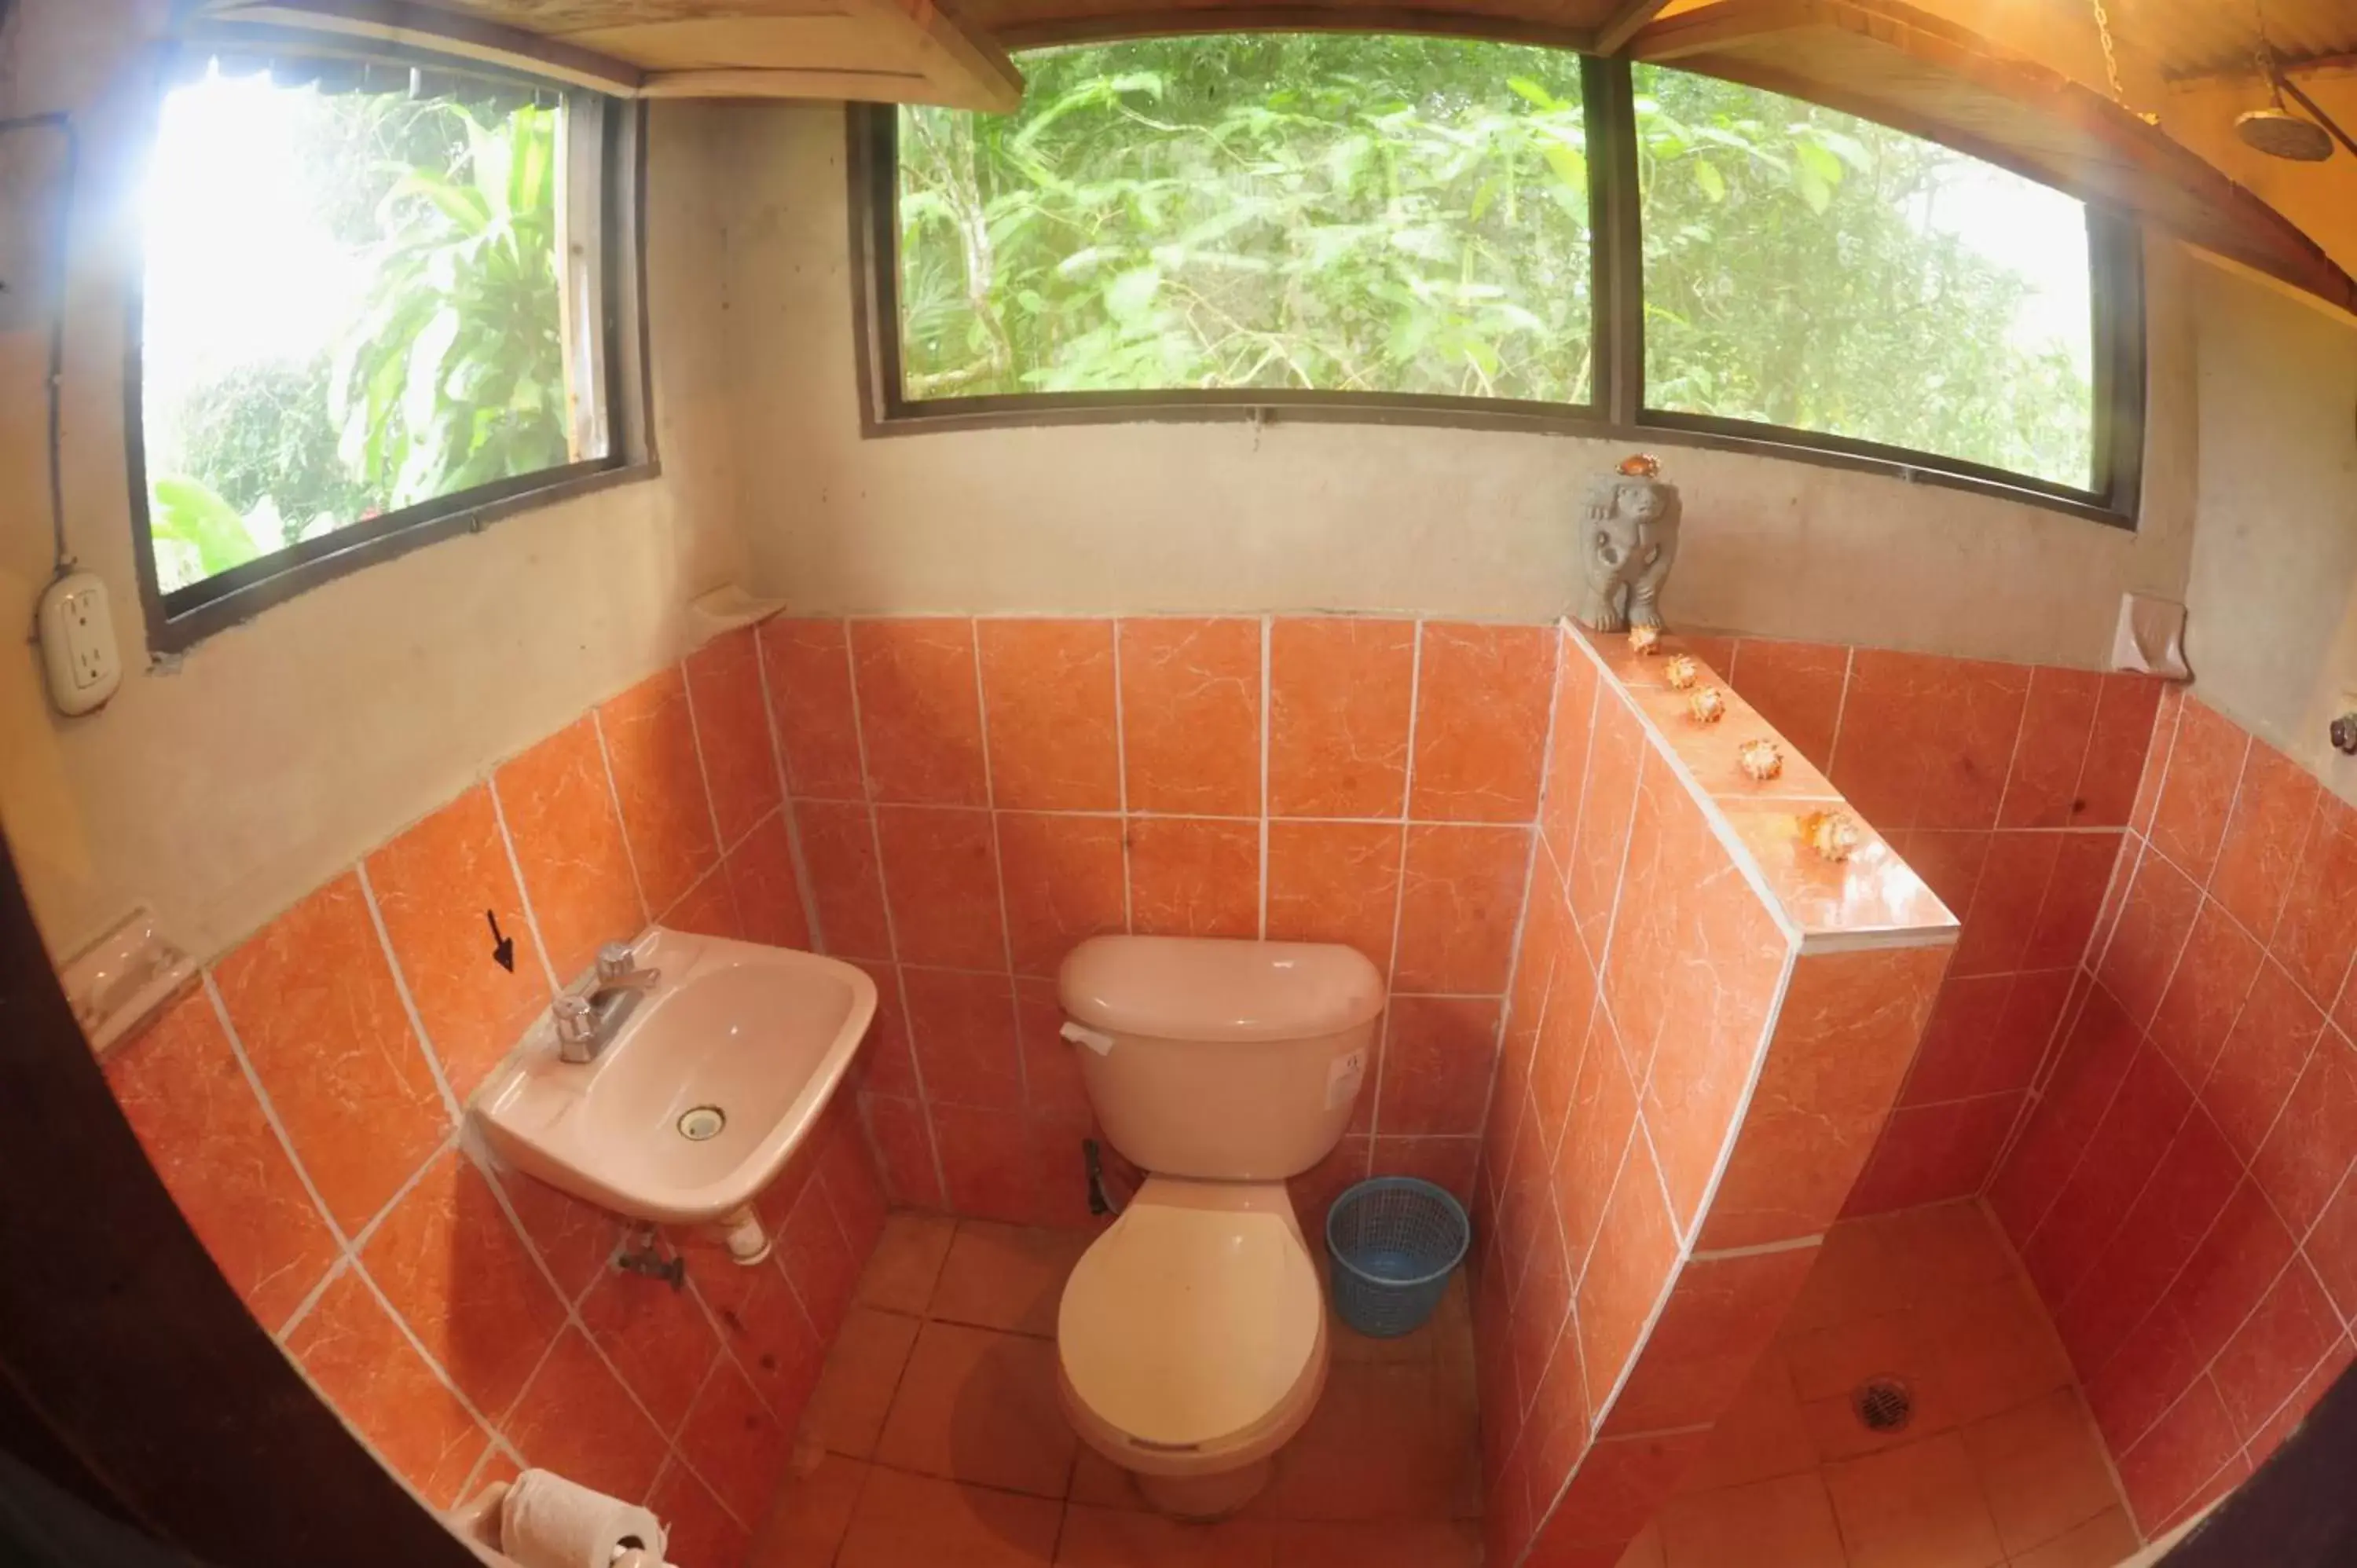 Bathroom in Ecobiosfera